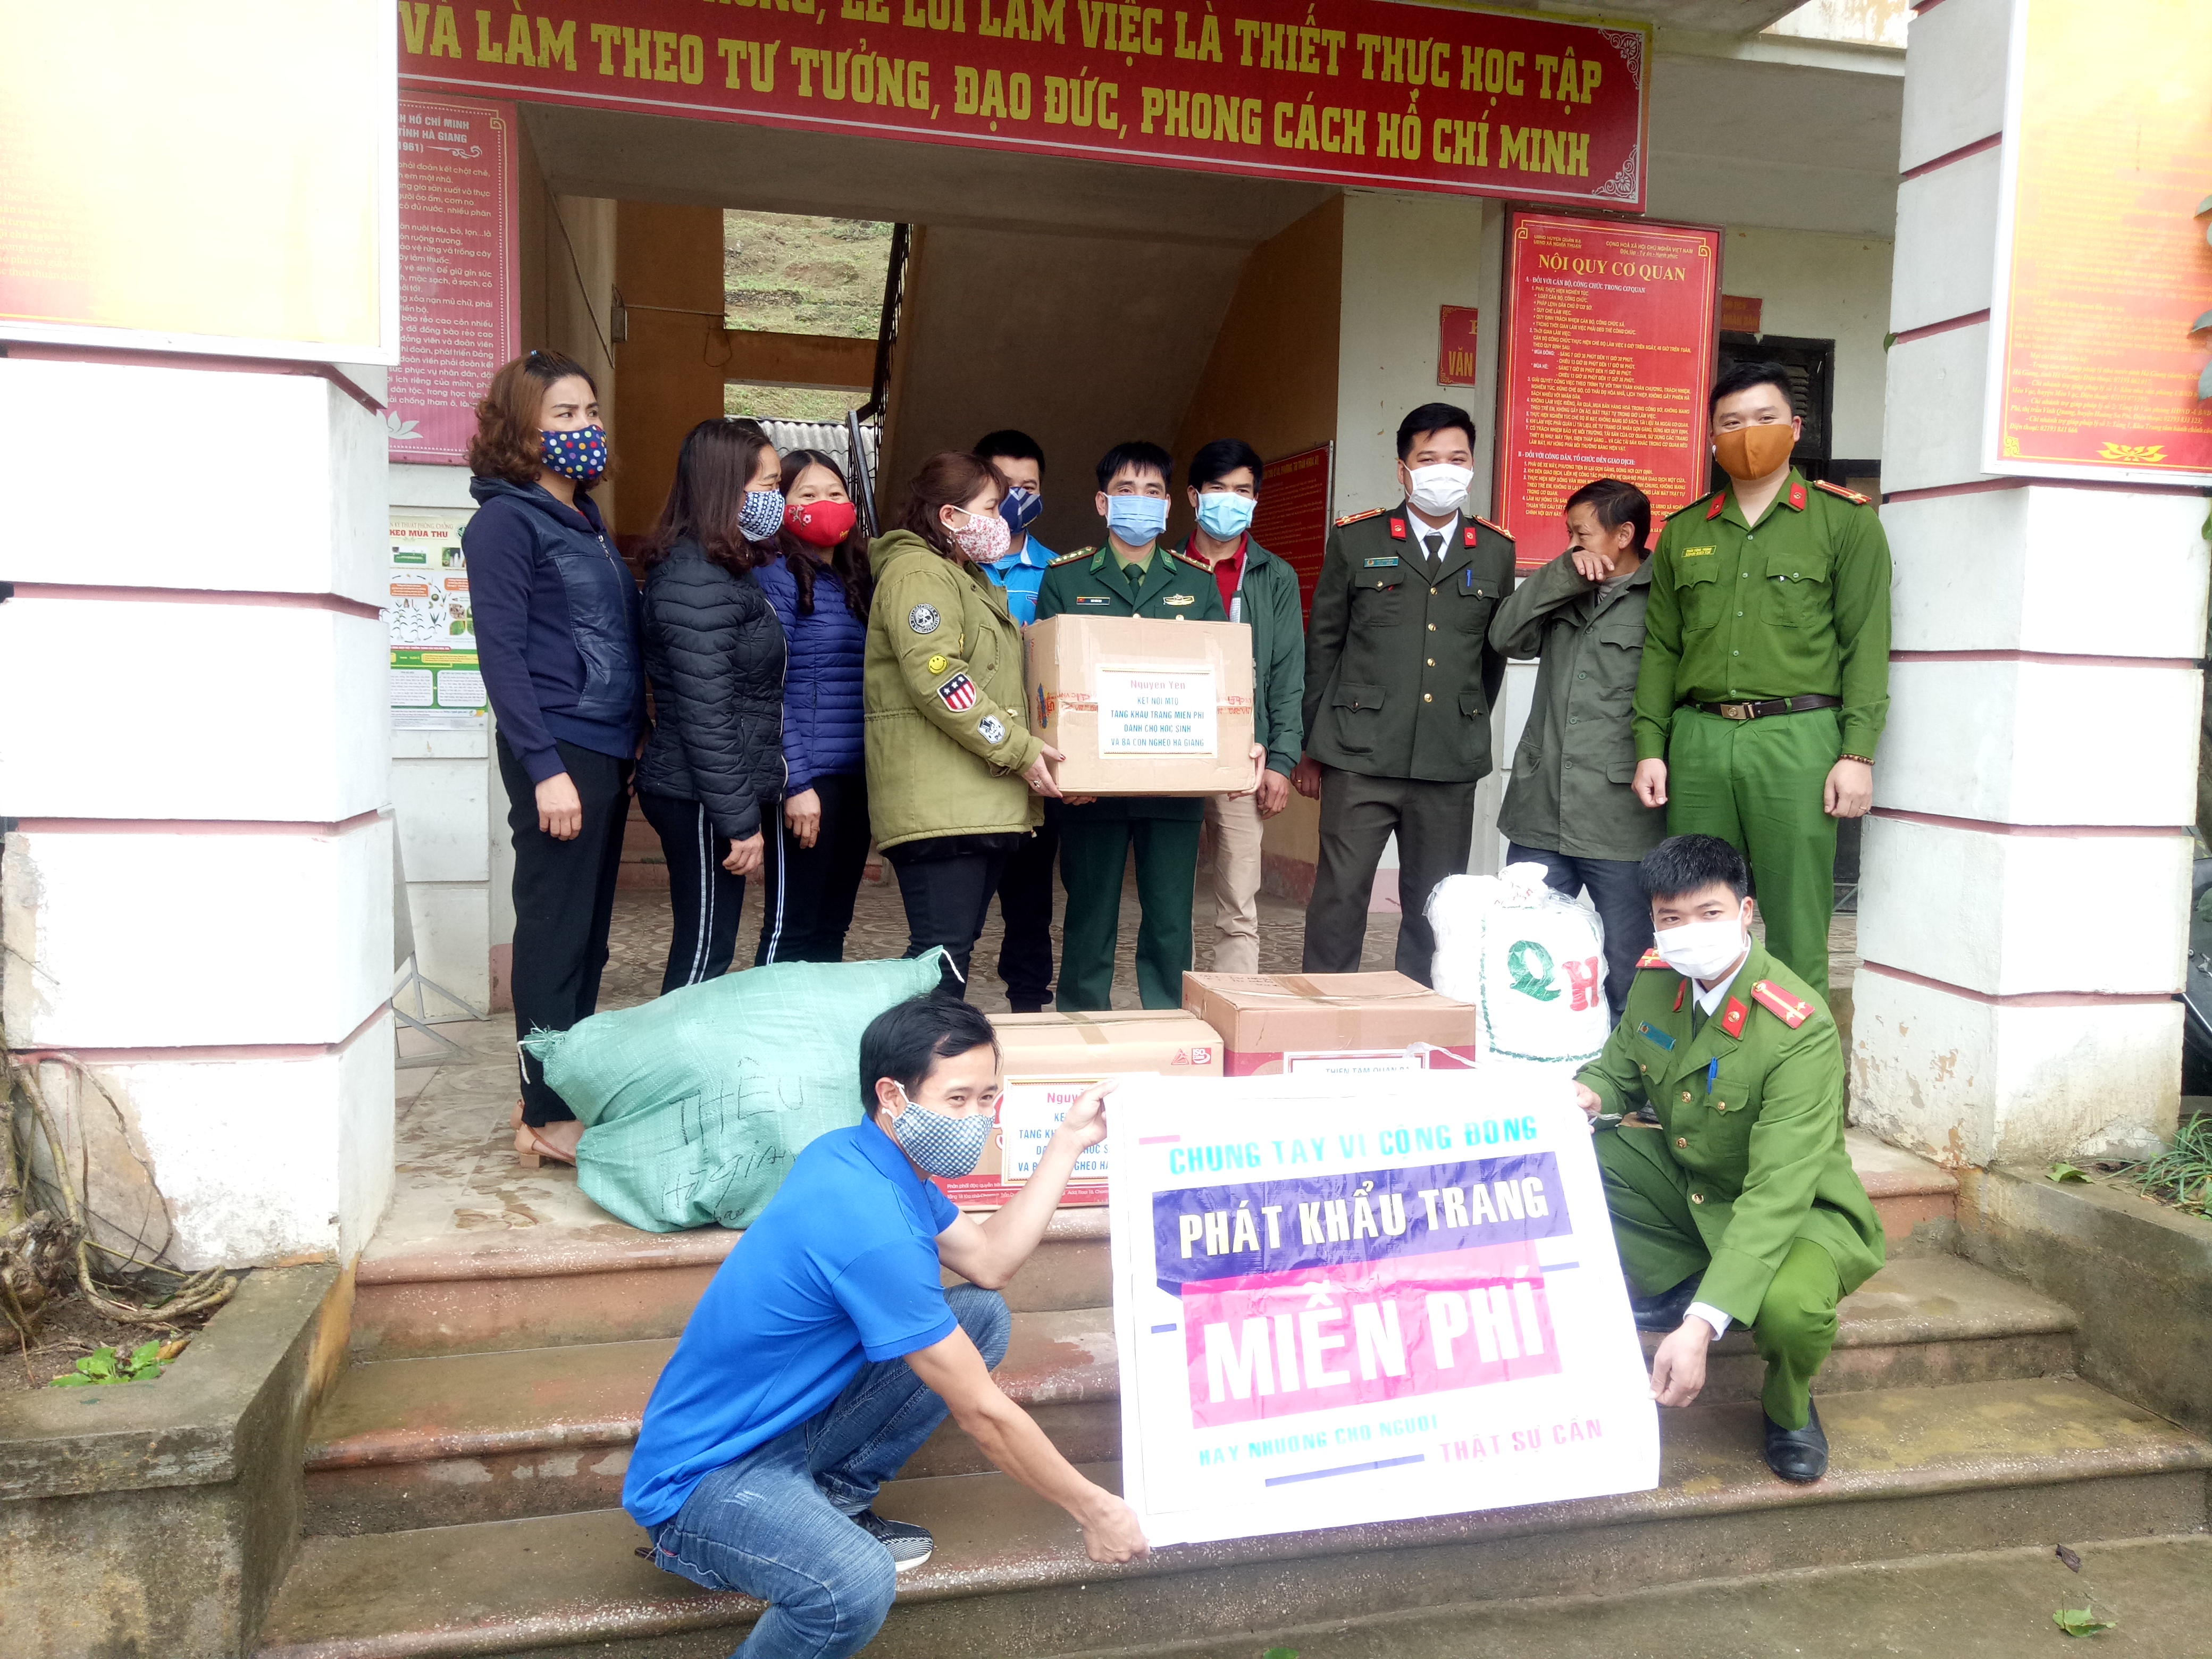 Đoàn từ thiện phát khẩu trang miễn phí cho người dân xã Nghĩa Thuận